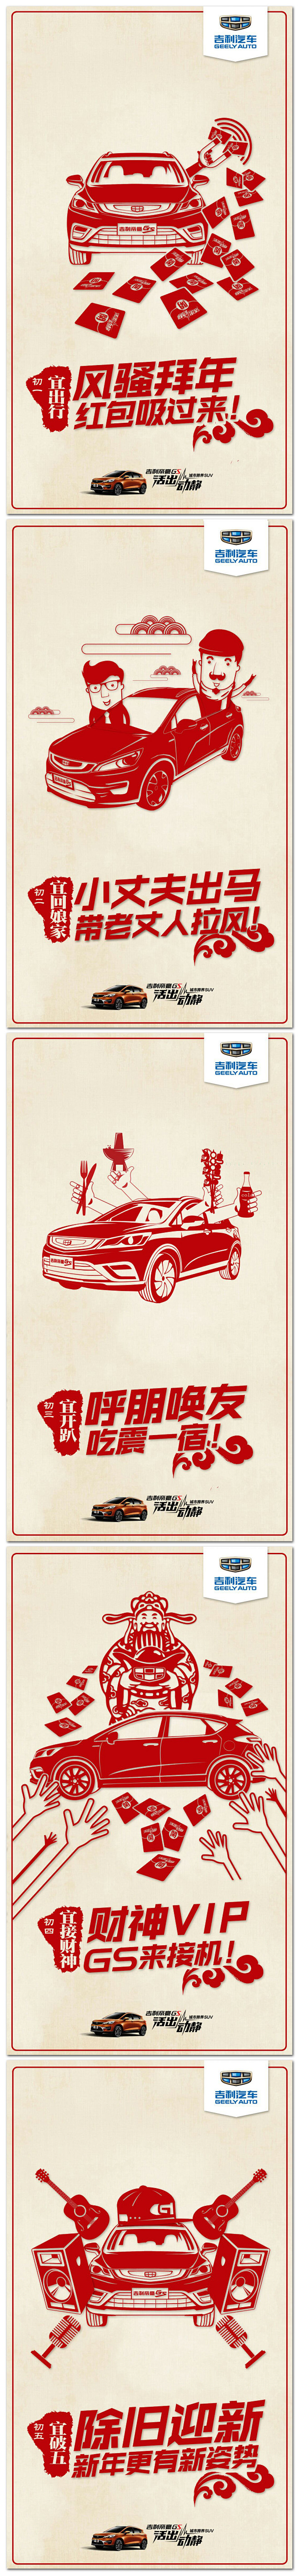 帝豪GS春节剪纸系列海报